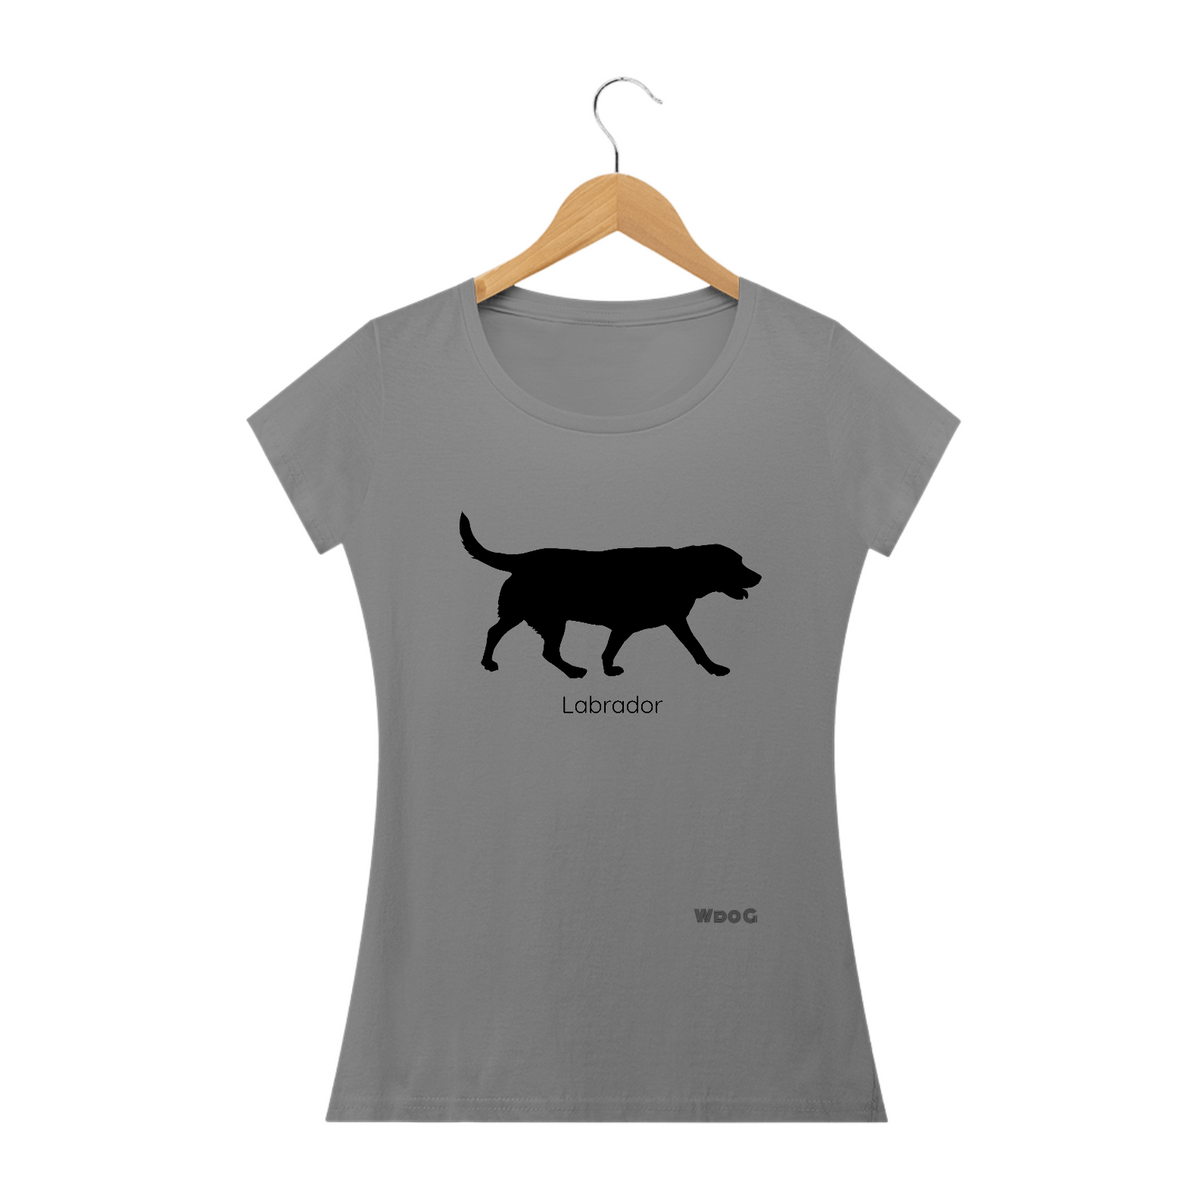 Nome do produto: Sombra do labrador / T-shirt Woman Labrador